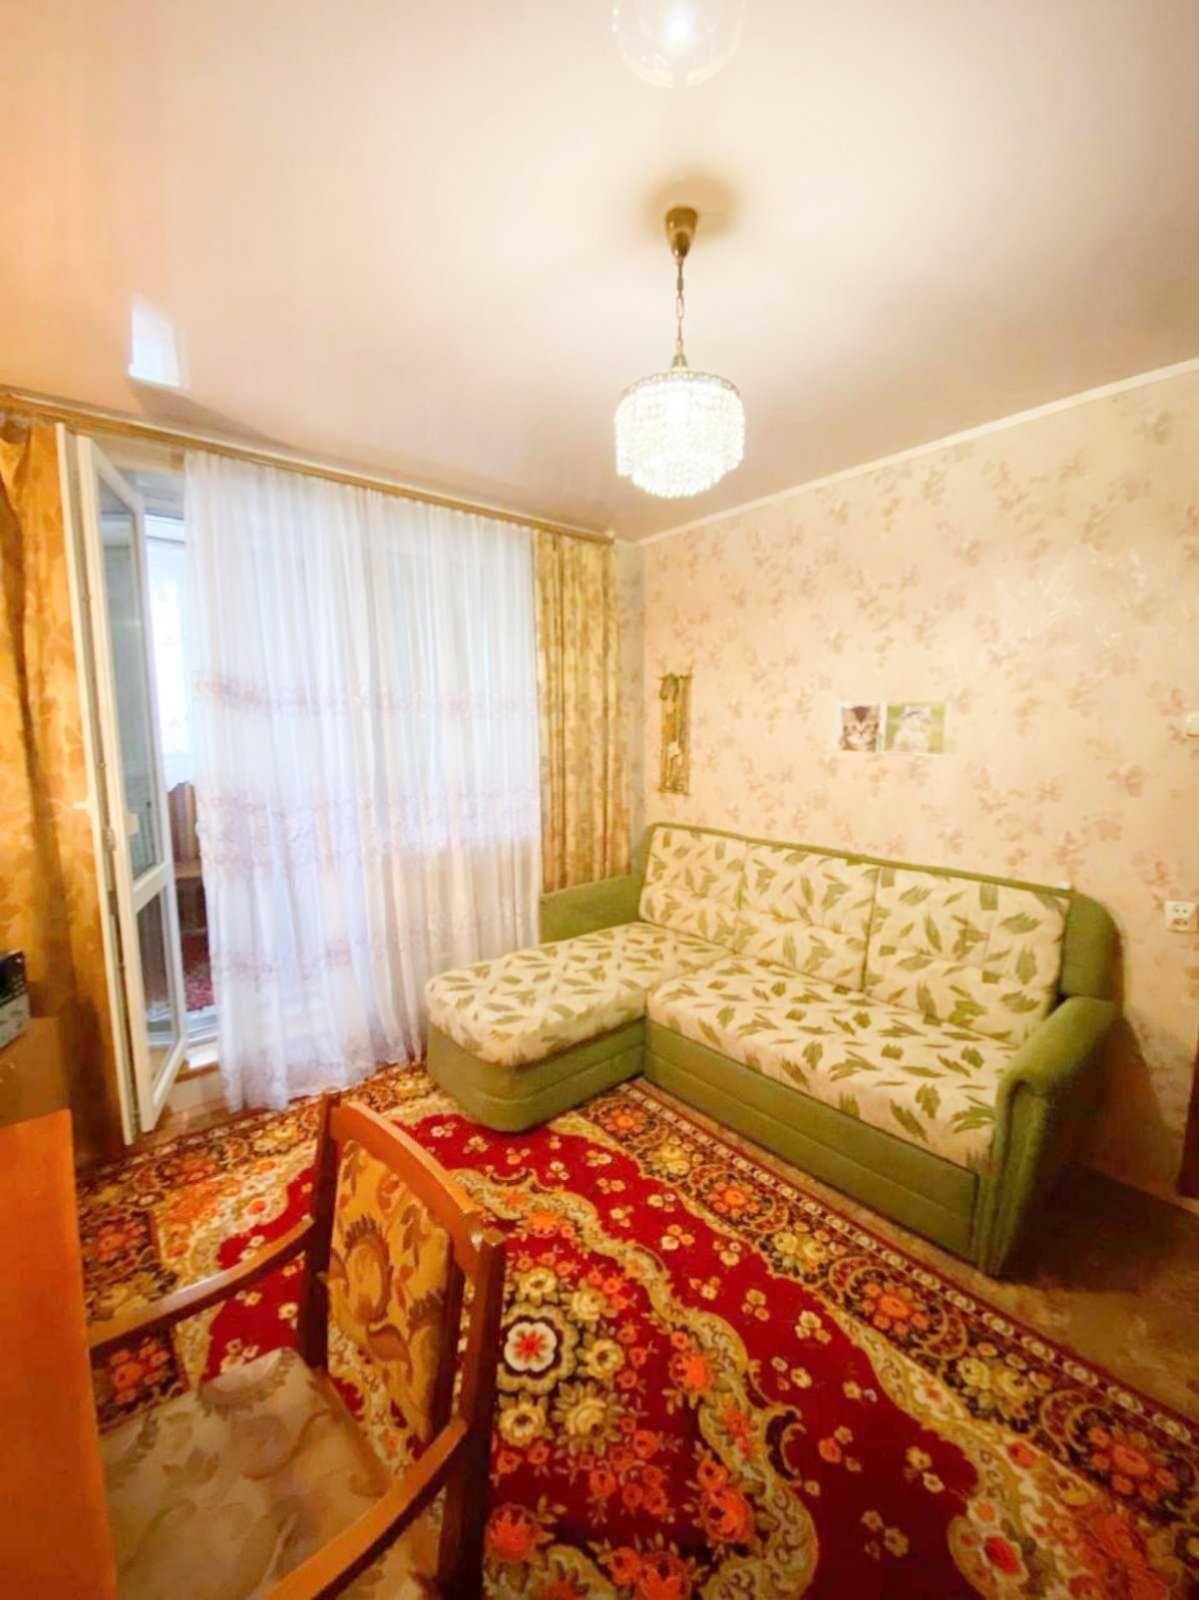 Аренда 2 комнат у 3-х комнатной квартире в п. Жуковского